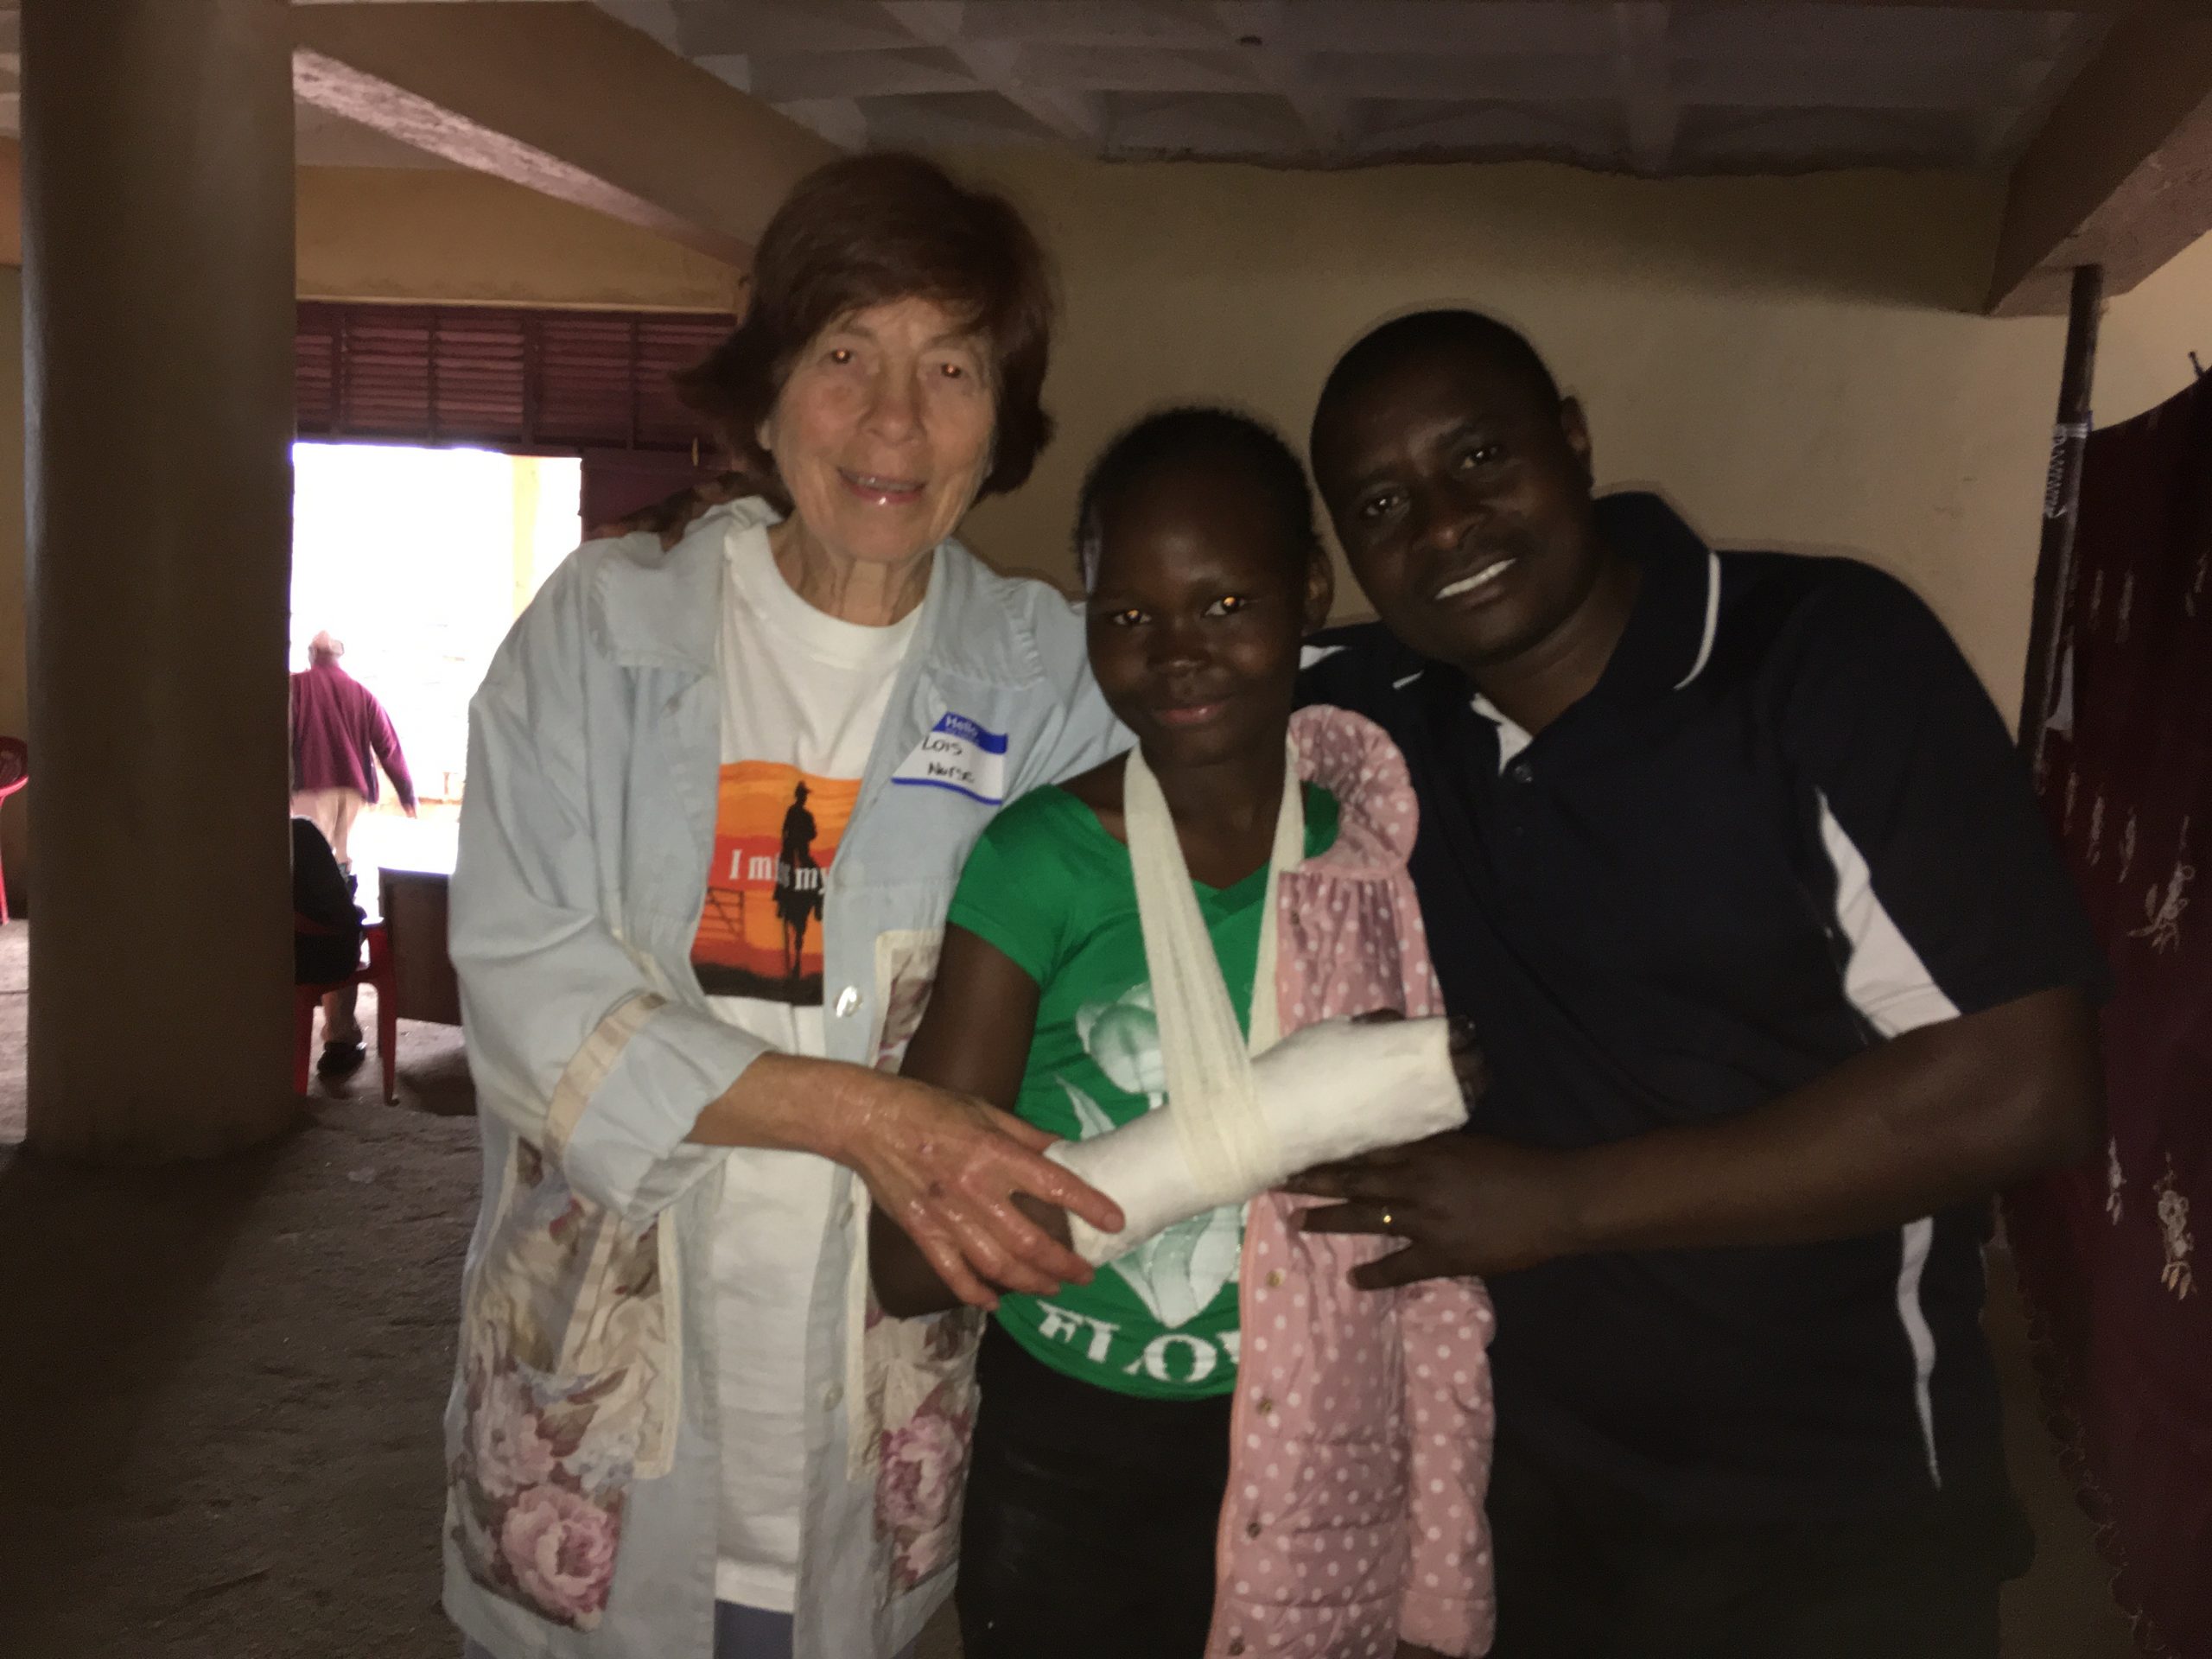 Kenya med clnic girl broken arm treated lois pastor Oliver